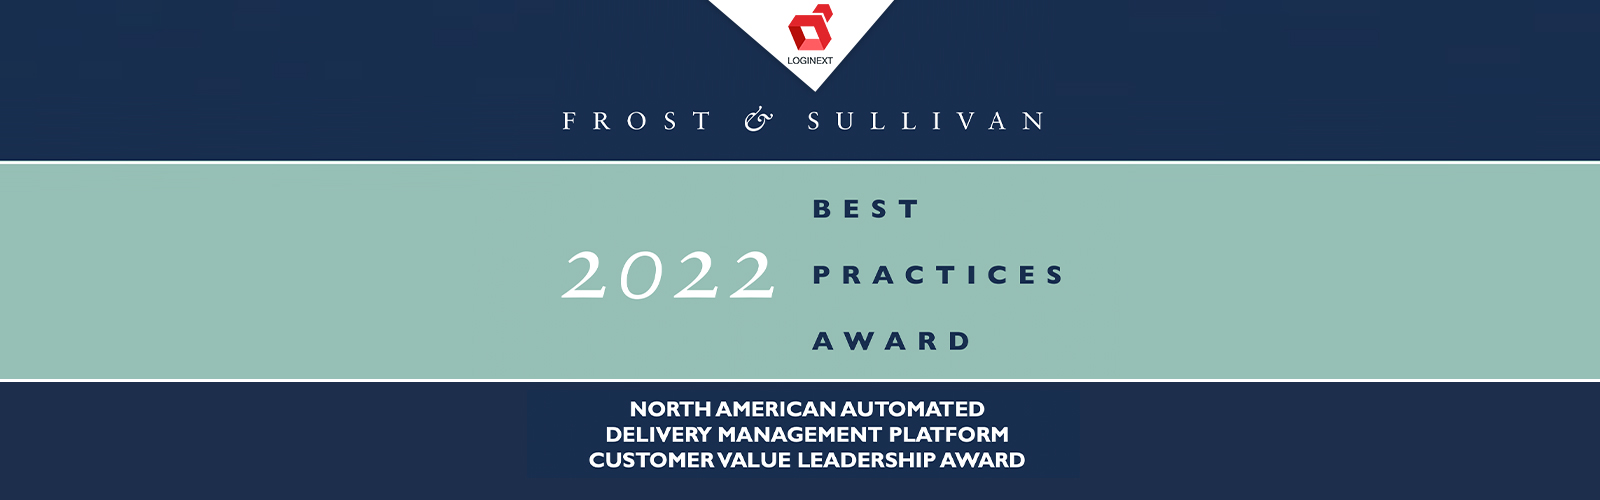 LogiNext otrzymuje nagrodę Frost & Sullivan za rok 2022 w Ameryce Północnej dla lidera wartości klienta